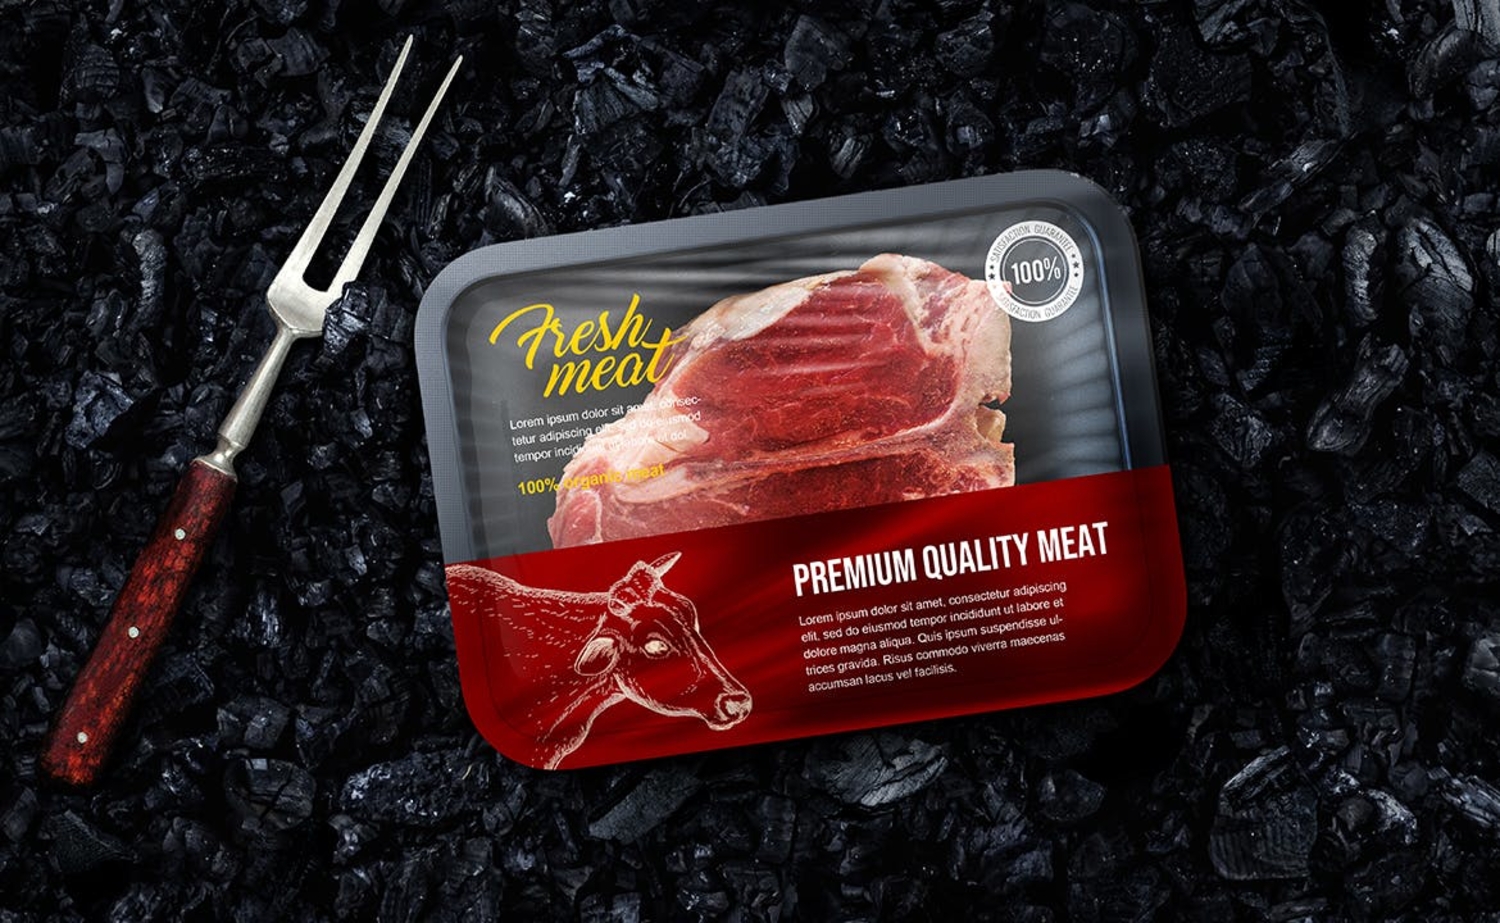 冷冻肉类食品包装保鲜盒设计样机 YC243